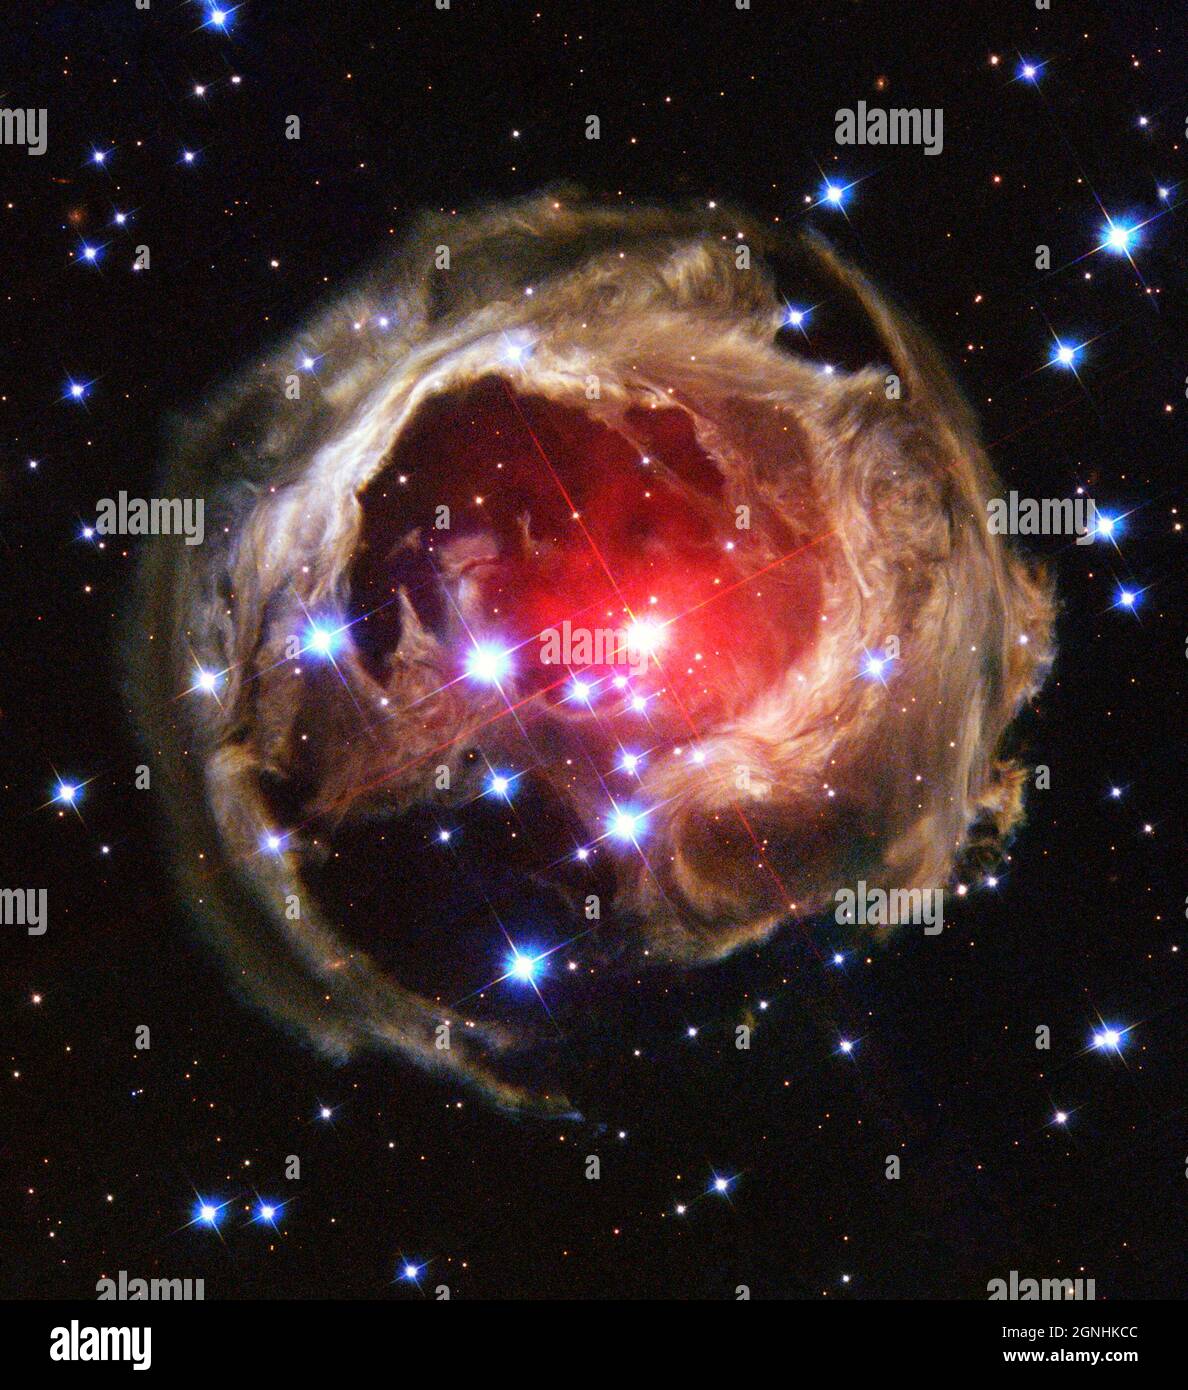 V383 Monocerotis (V838 Mon). L'illuminazione della polvere interstellare proviene dalla stella supergigante rossa al centro dell'immagine, che ha dato un impulso di luce simile a una lampadina a torcia due anni fa. V838 Mon si trova a circa 20,000 anni luce dalla Terra in direzione della costellazione Monoceros, ponendo la stella sul bordo esterno della nostra galassia Via Lattea. Fonte immagine NASA/ESA Hubble Space Telescope Foto Stock